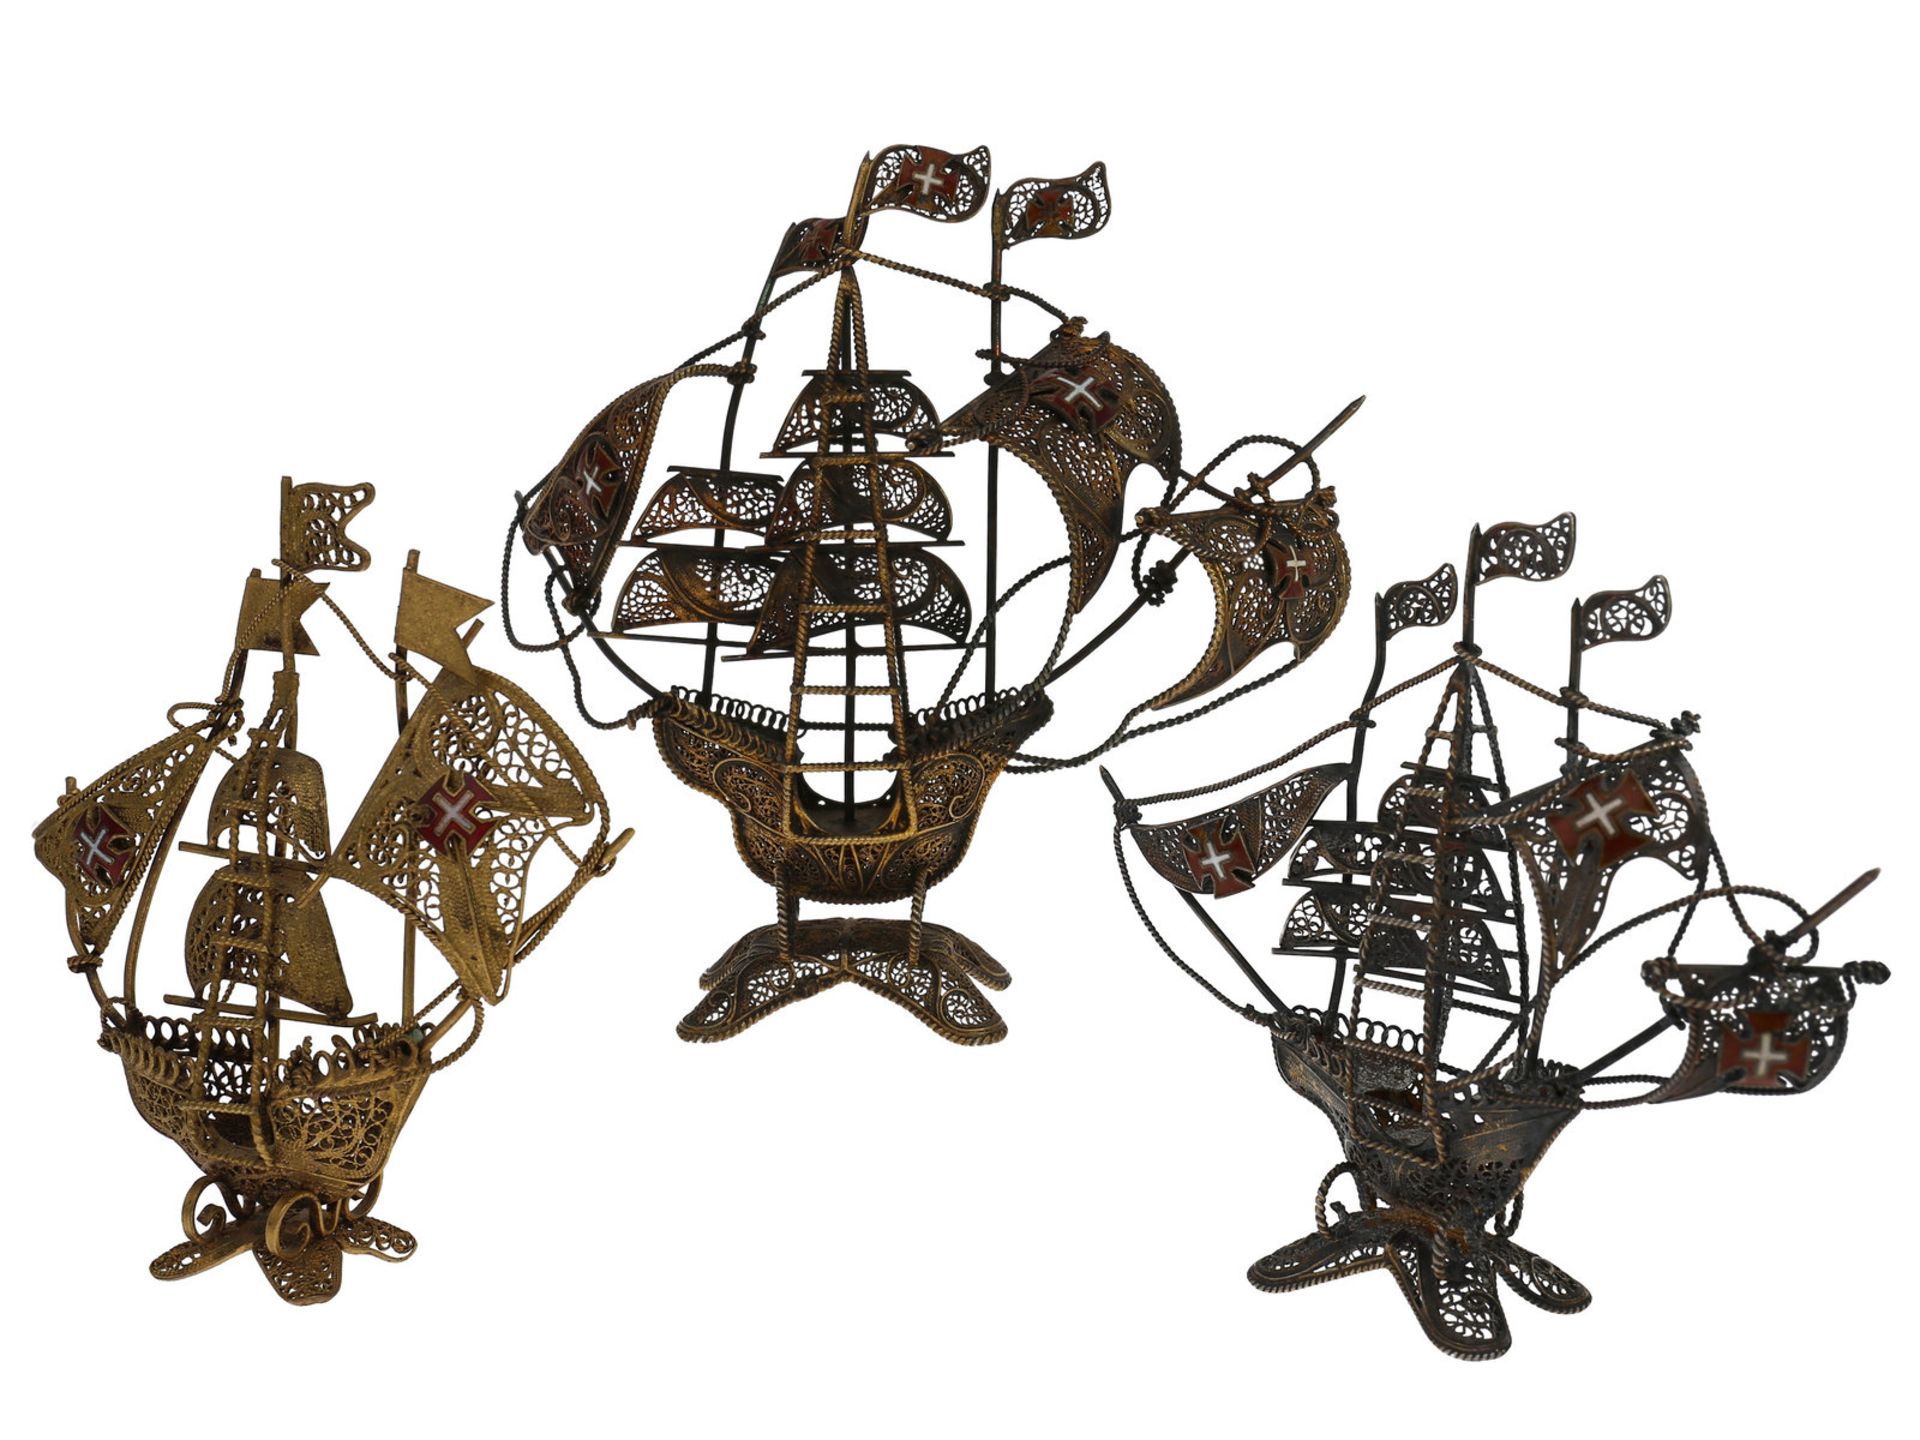 Schiffsmodel: interessantes Konvolut von 3 antiken Schiffsmodellen, vermutlich Portugal um 19202